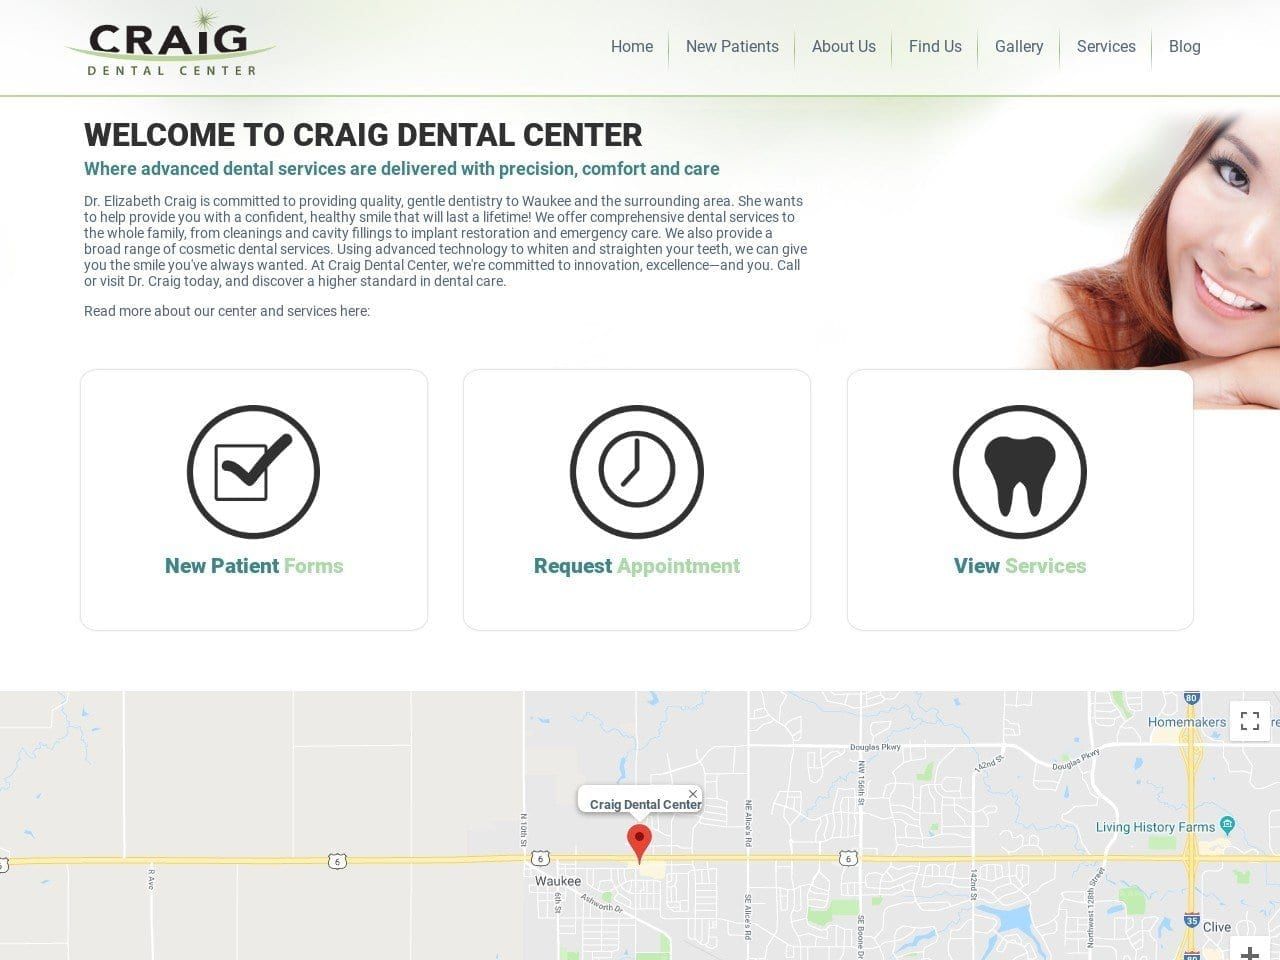 Craig Dental Center Website Screenshot from craigdentalcenter.com